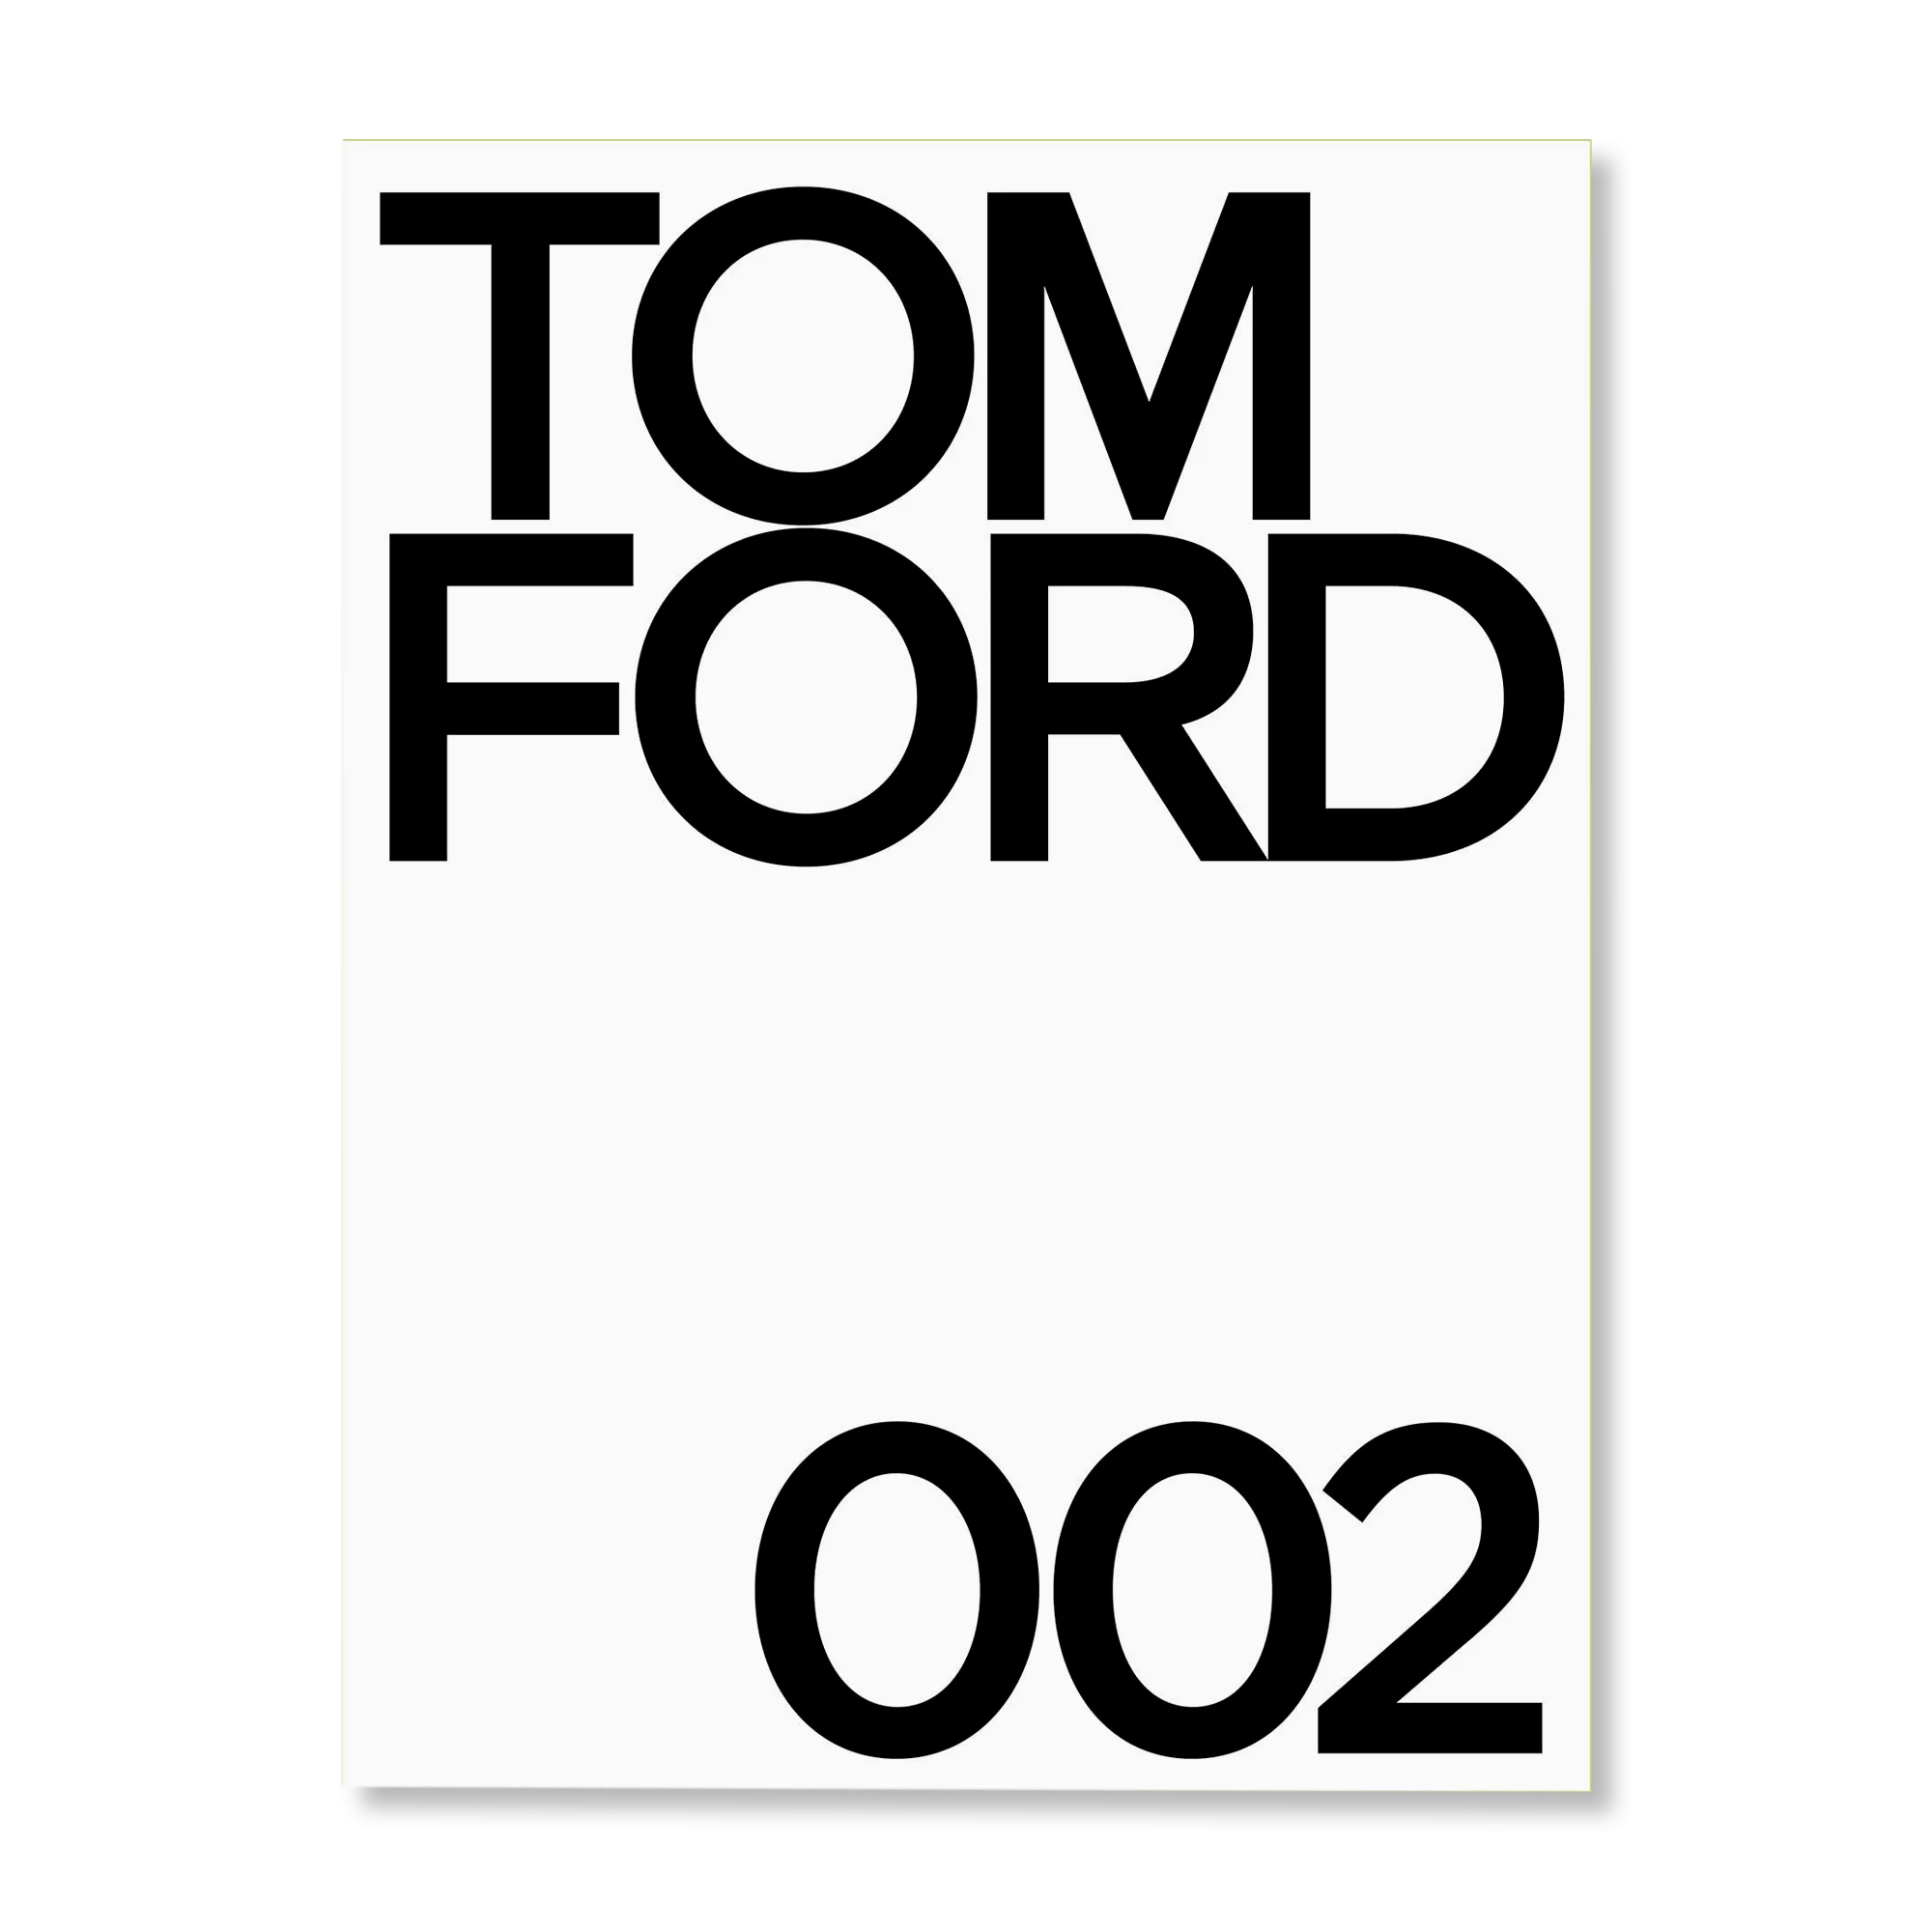 TOM FORD 002